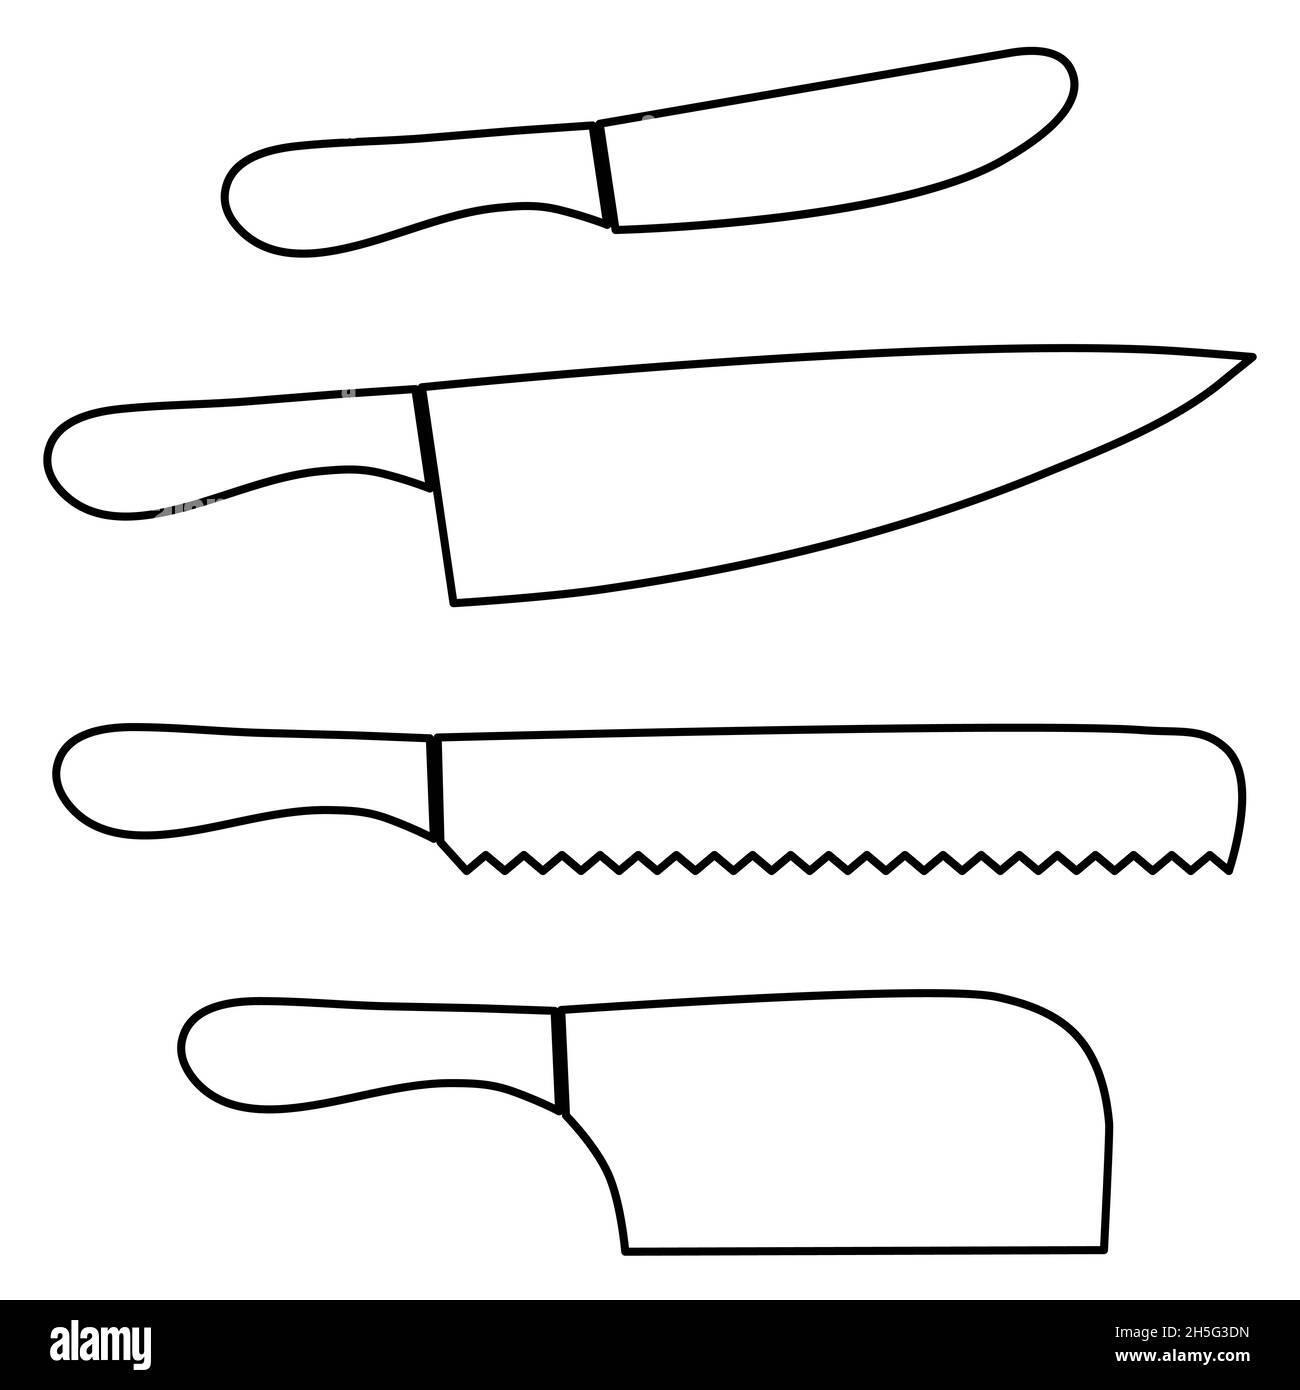 Küchenwerkzeuge Satz von vier Küchenmessern für Butter, Brot, Schnitzmesser und Trennmesser skizzieren einfache minimalistische flache Design-Vektor-Illustration Stock Vektor